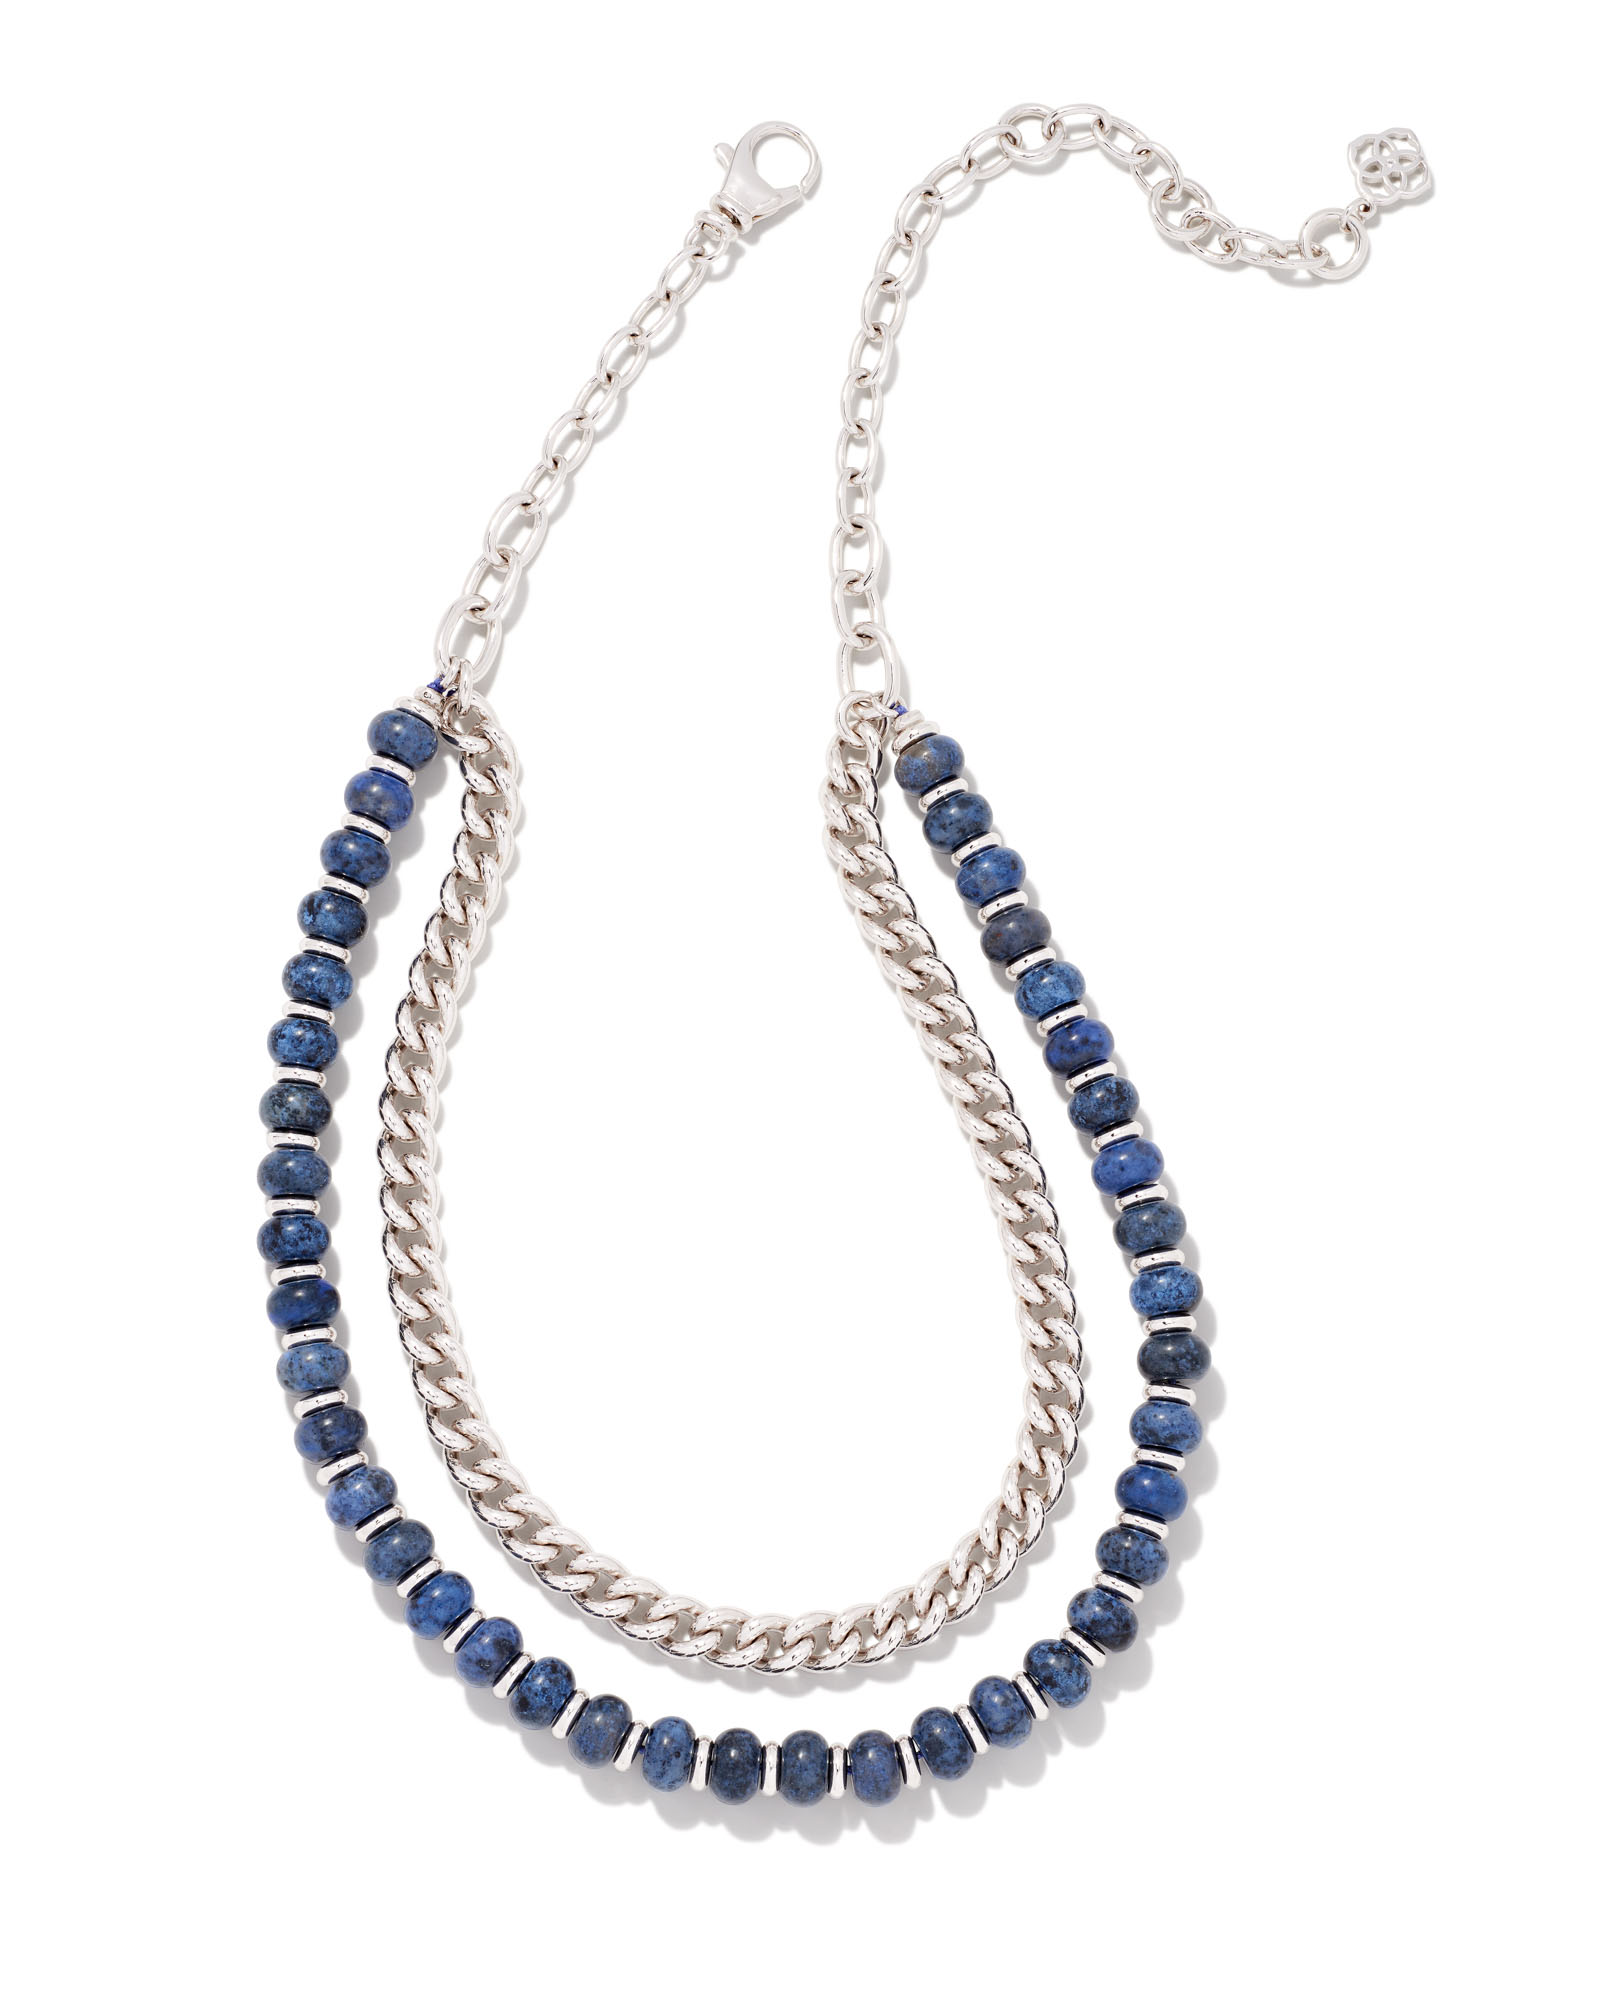 Rebecca Silver Multi Strand Necklace in Blue Dumortierite | Kendra Scott